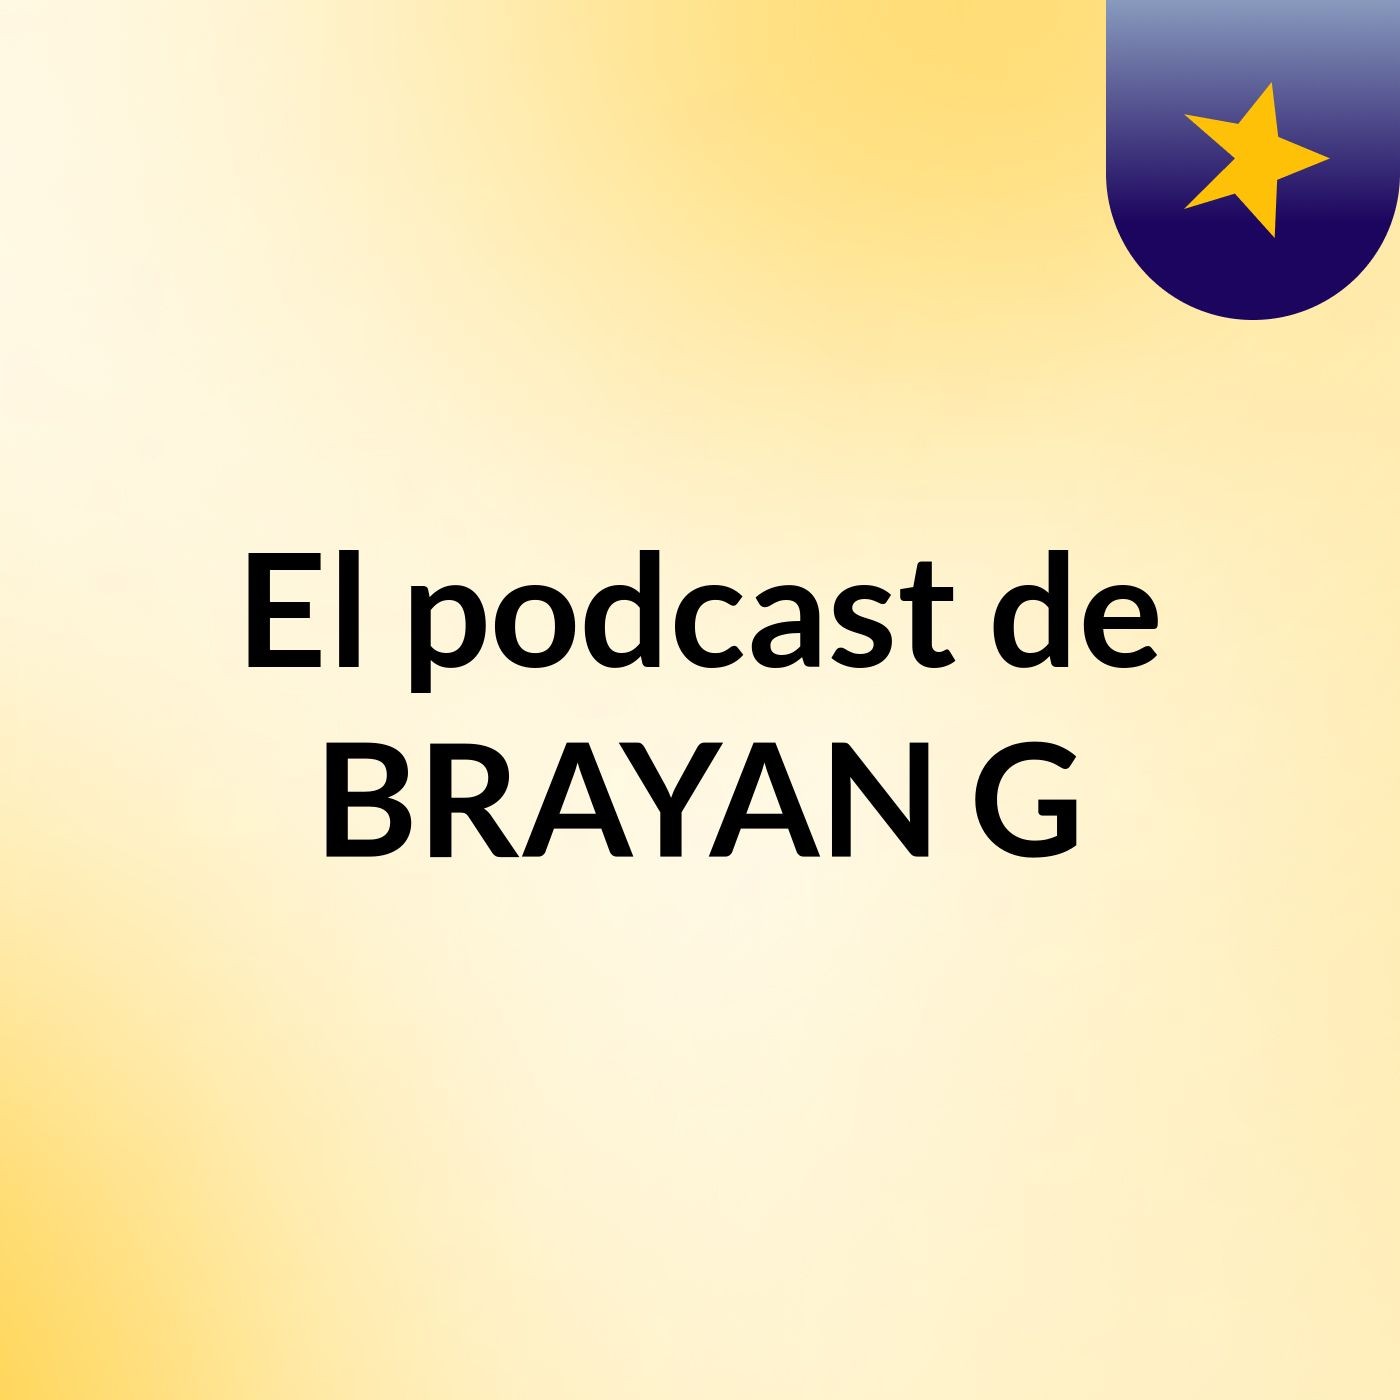 Episodio 4 - El podcast de BRAYAN G